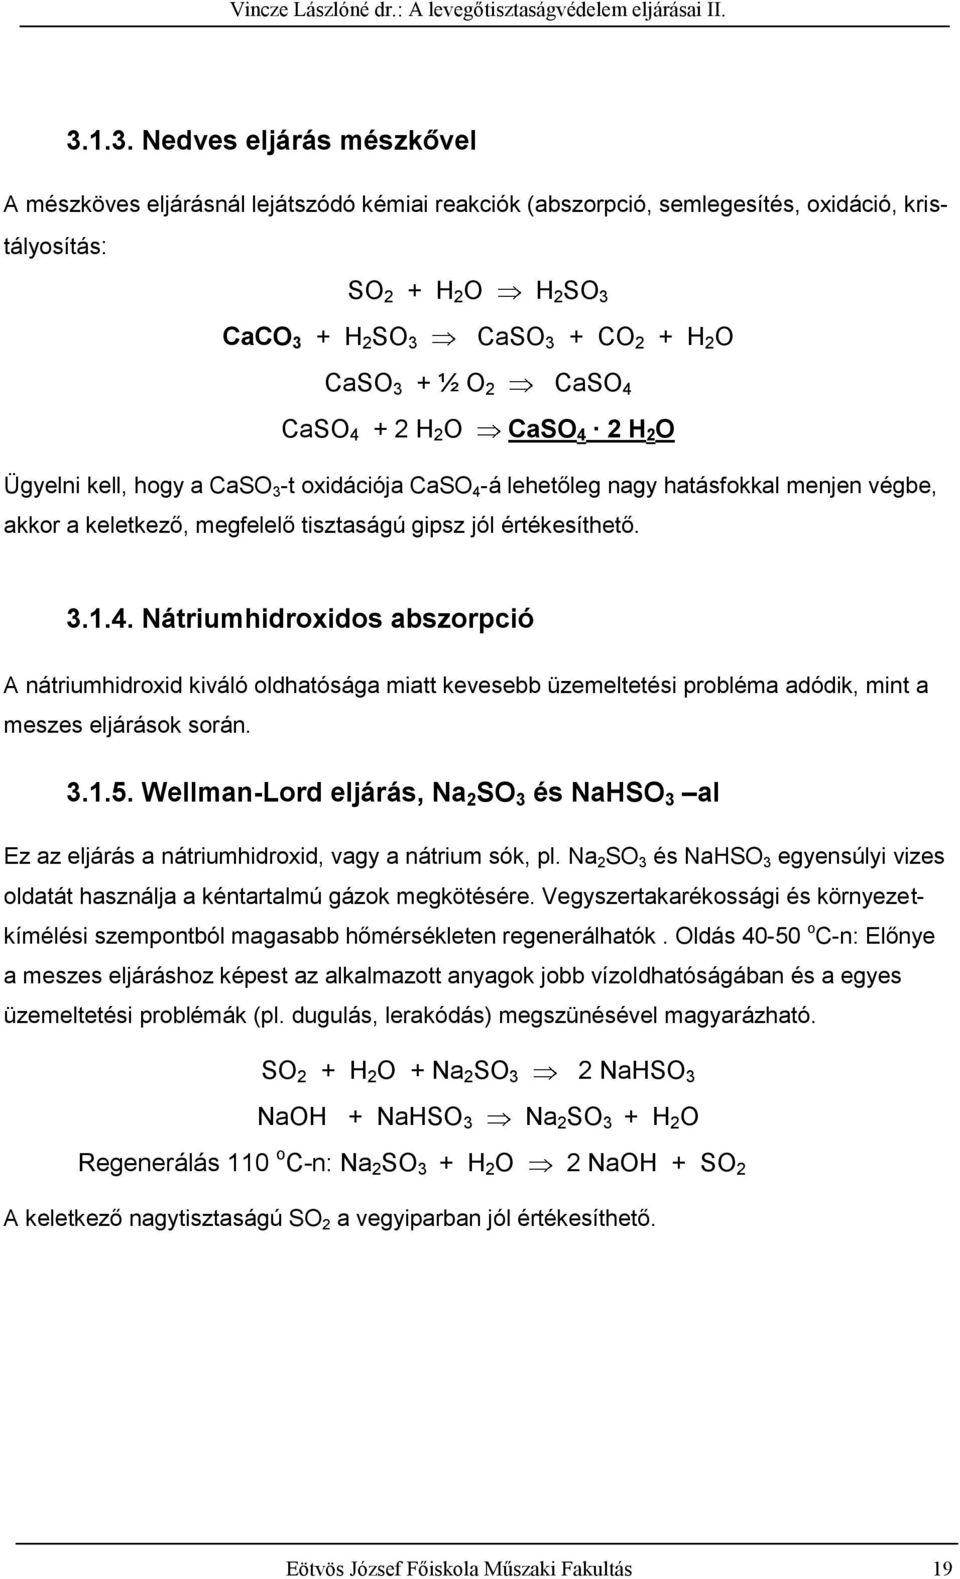 3.1.5. Wellman-Lord eljárás, Na SO 3 és NaHSO 3 al Ez az eljárás a nátriumhidroxid, vagy a nátrium sók, pl. Na SO 3 és NaHSO 3 egyensúlyi vizes oldatát használja a kéntartalmú gázok megkötésére.